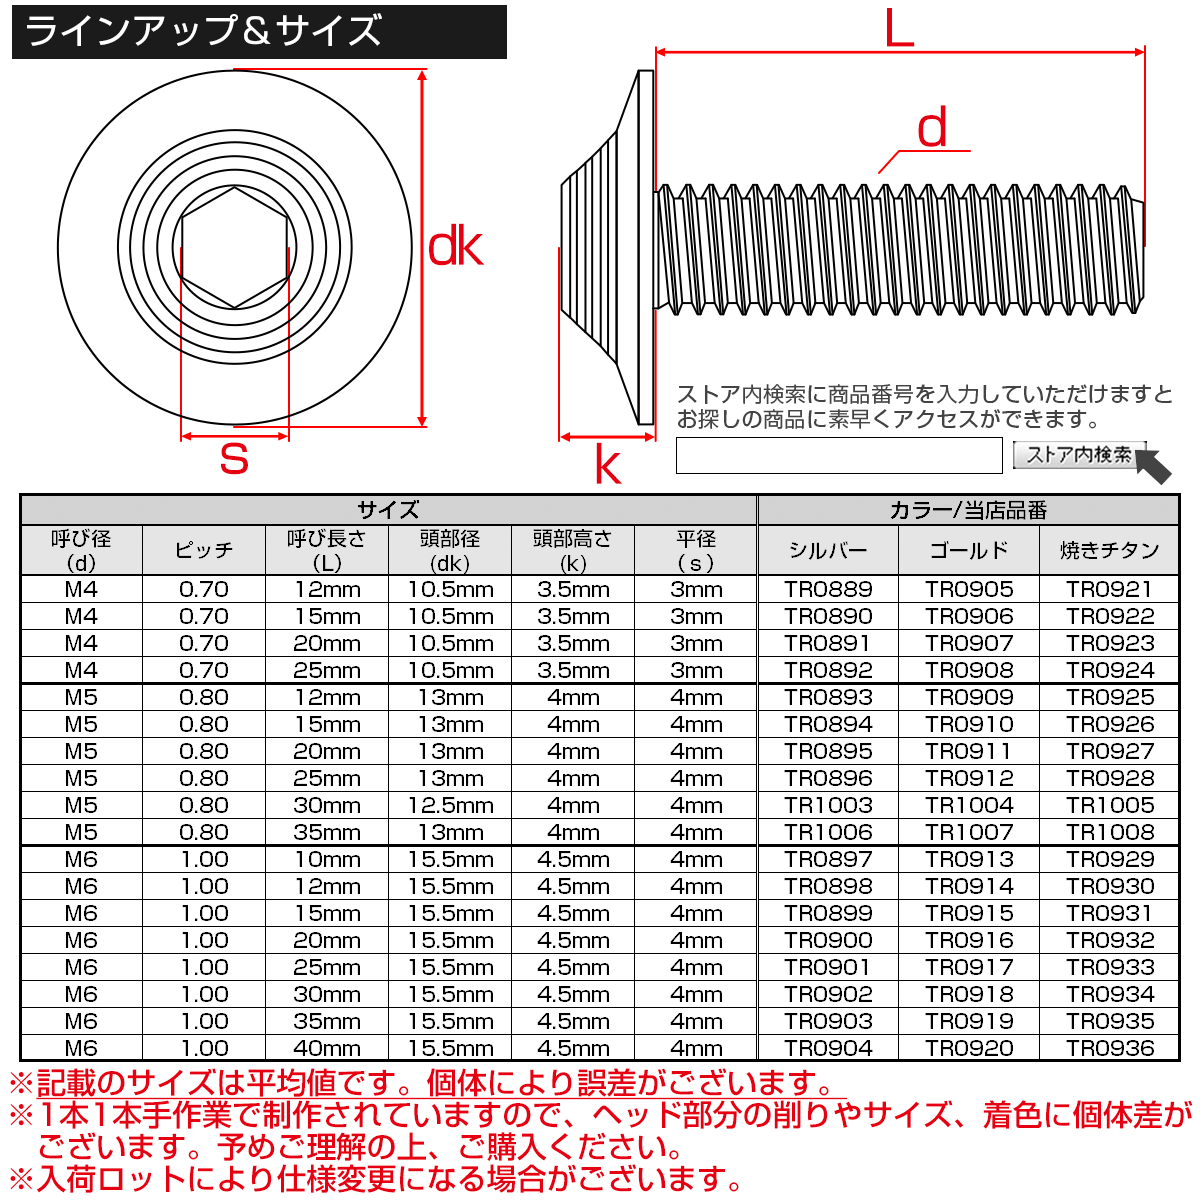 ボタンボルト M6×12mm P1.0 SUS304 ステンレス シェルヘッド 六角穴 フランジ付き ボルト ゴールド TR0914の画像4